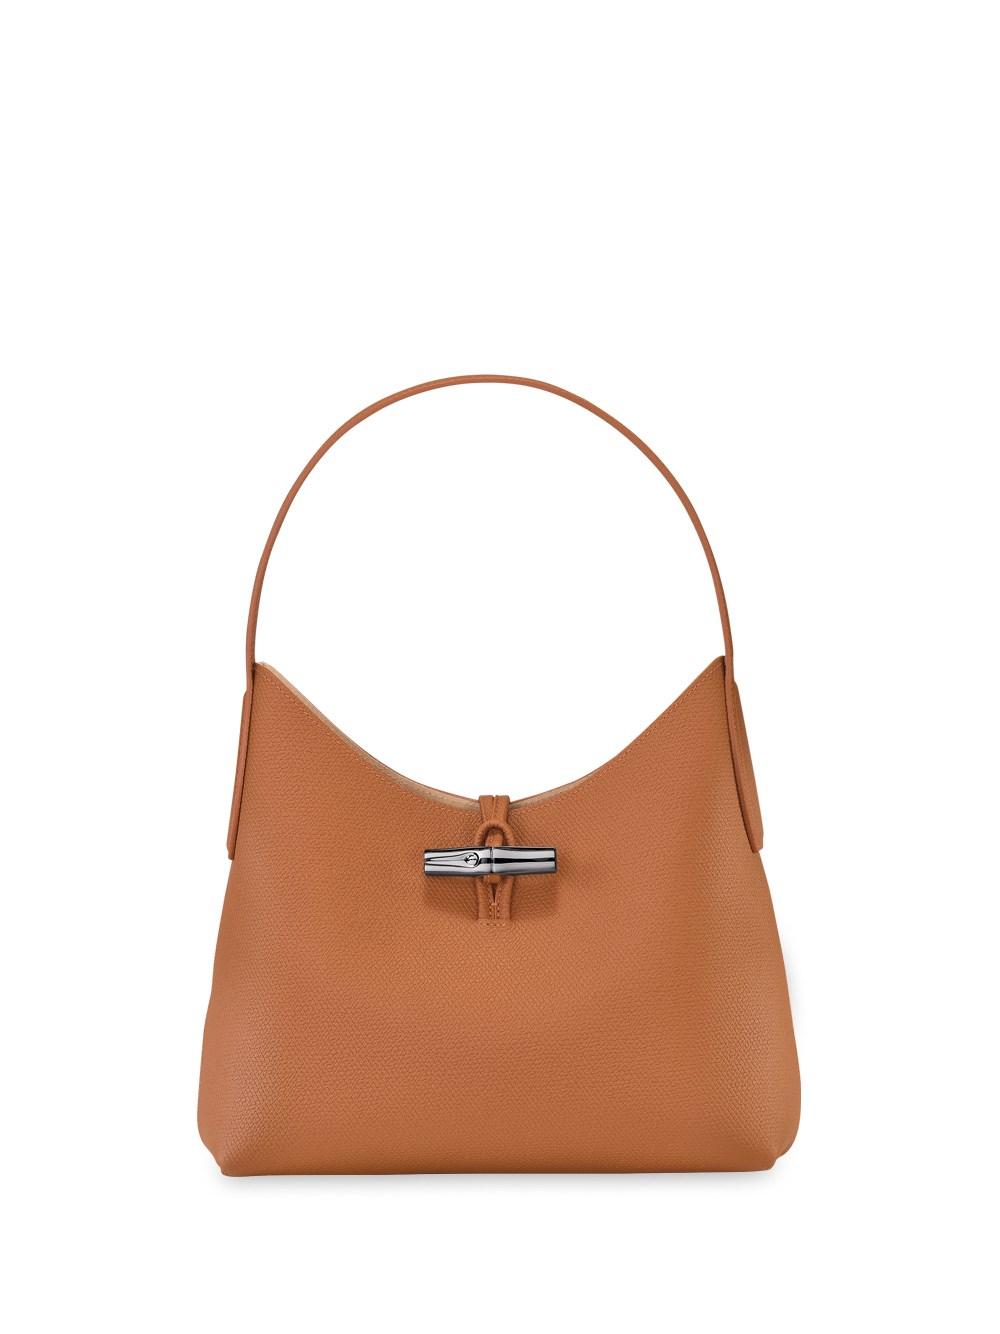 Longchamp Leather Hobo Bags